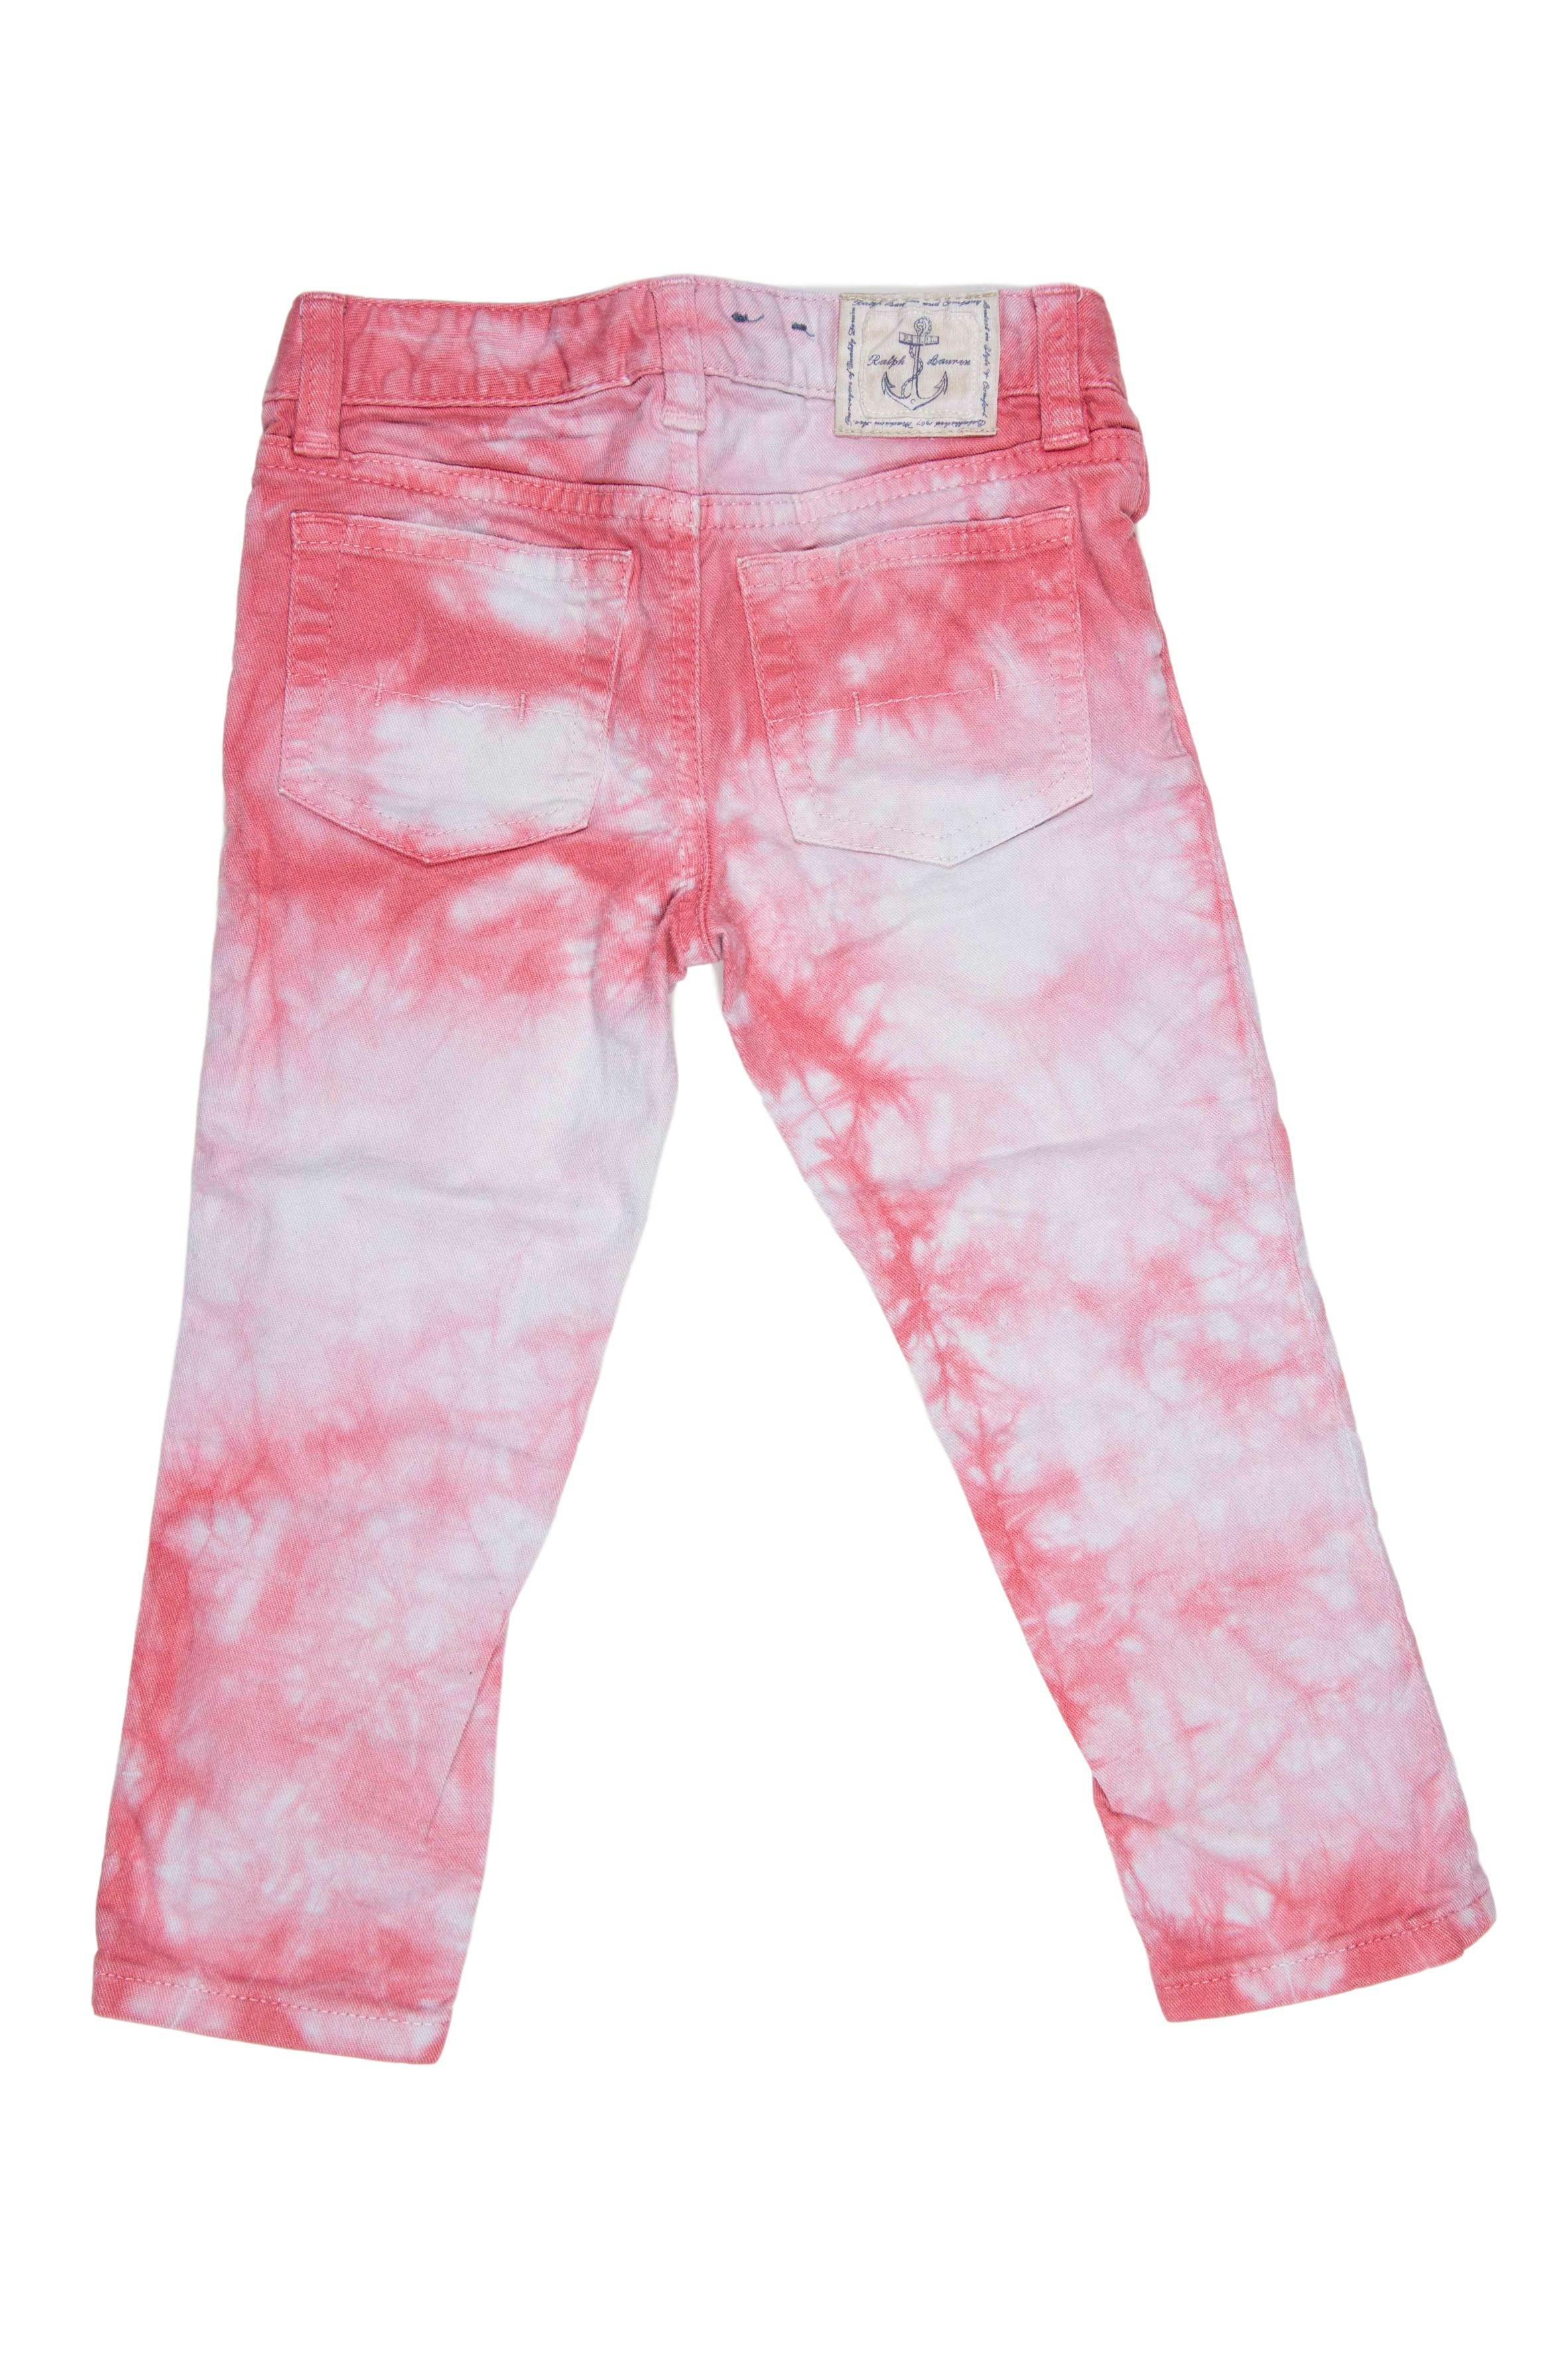 Jean batic blanco y rosa 98% algodón, 2% elastano. Precio original 120 soles - Ralph Lauren